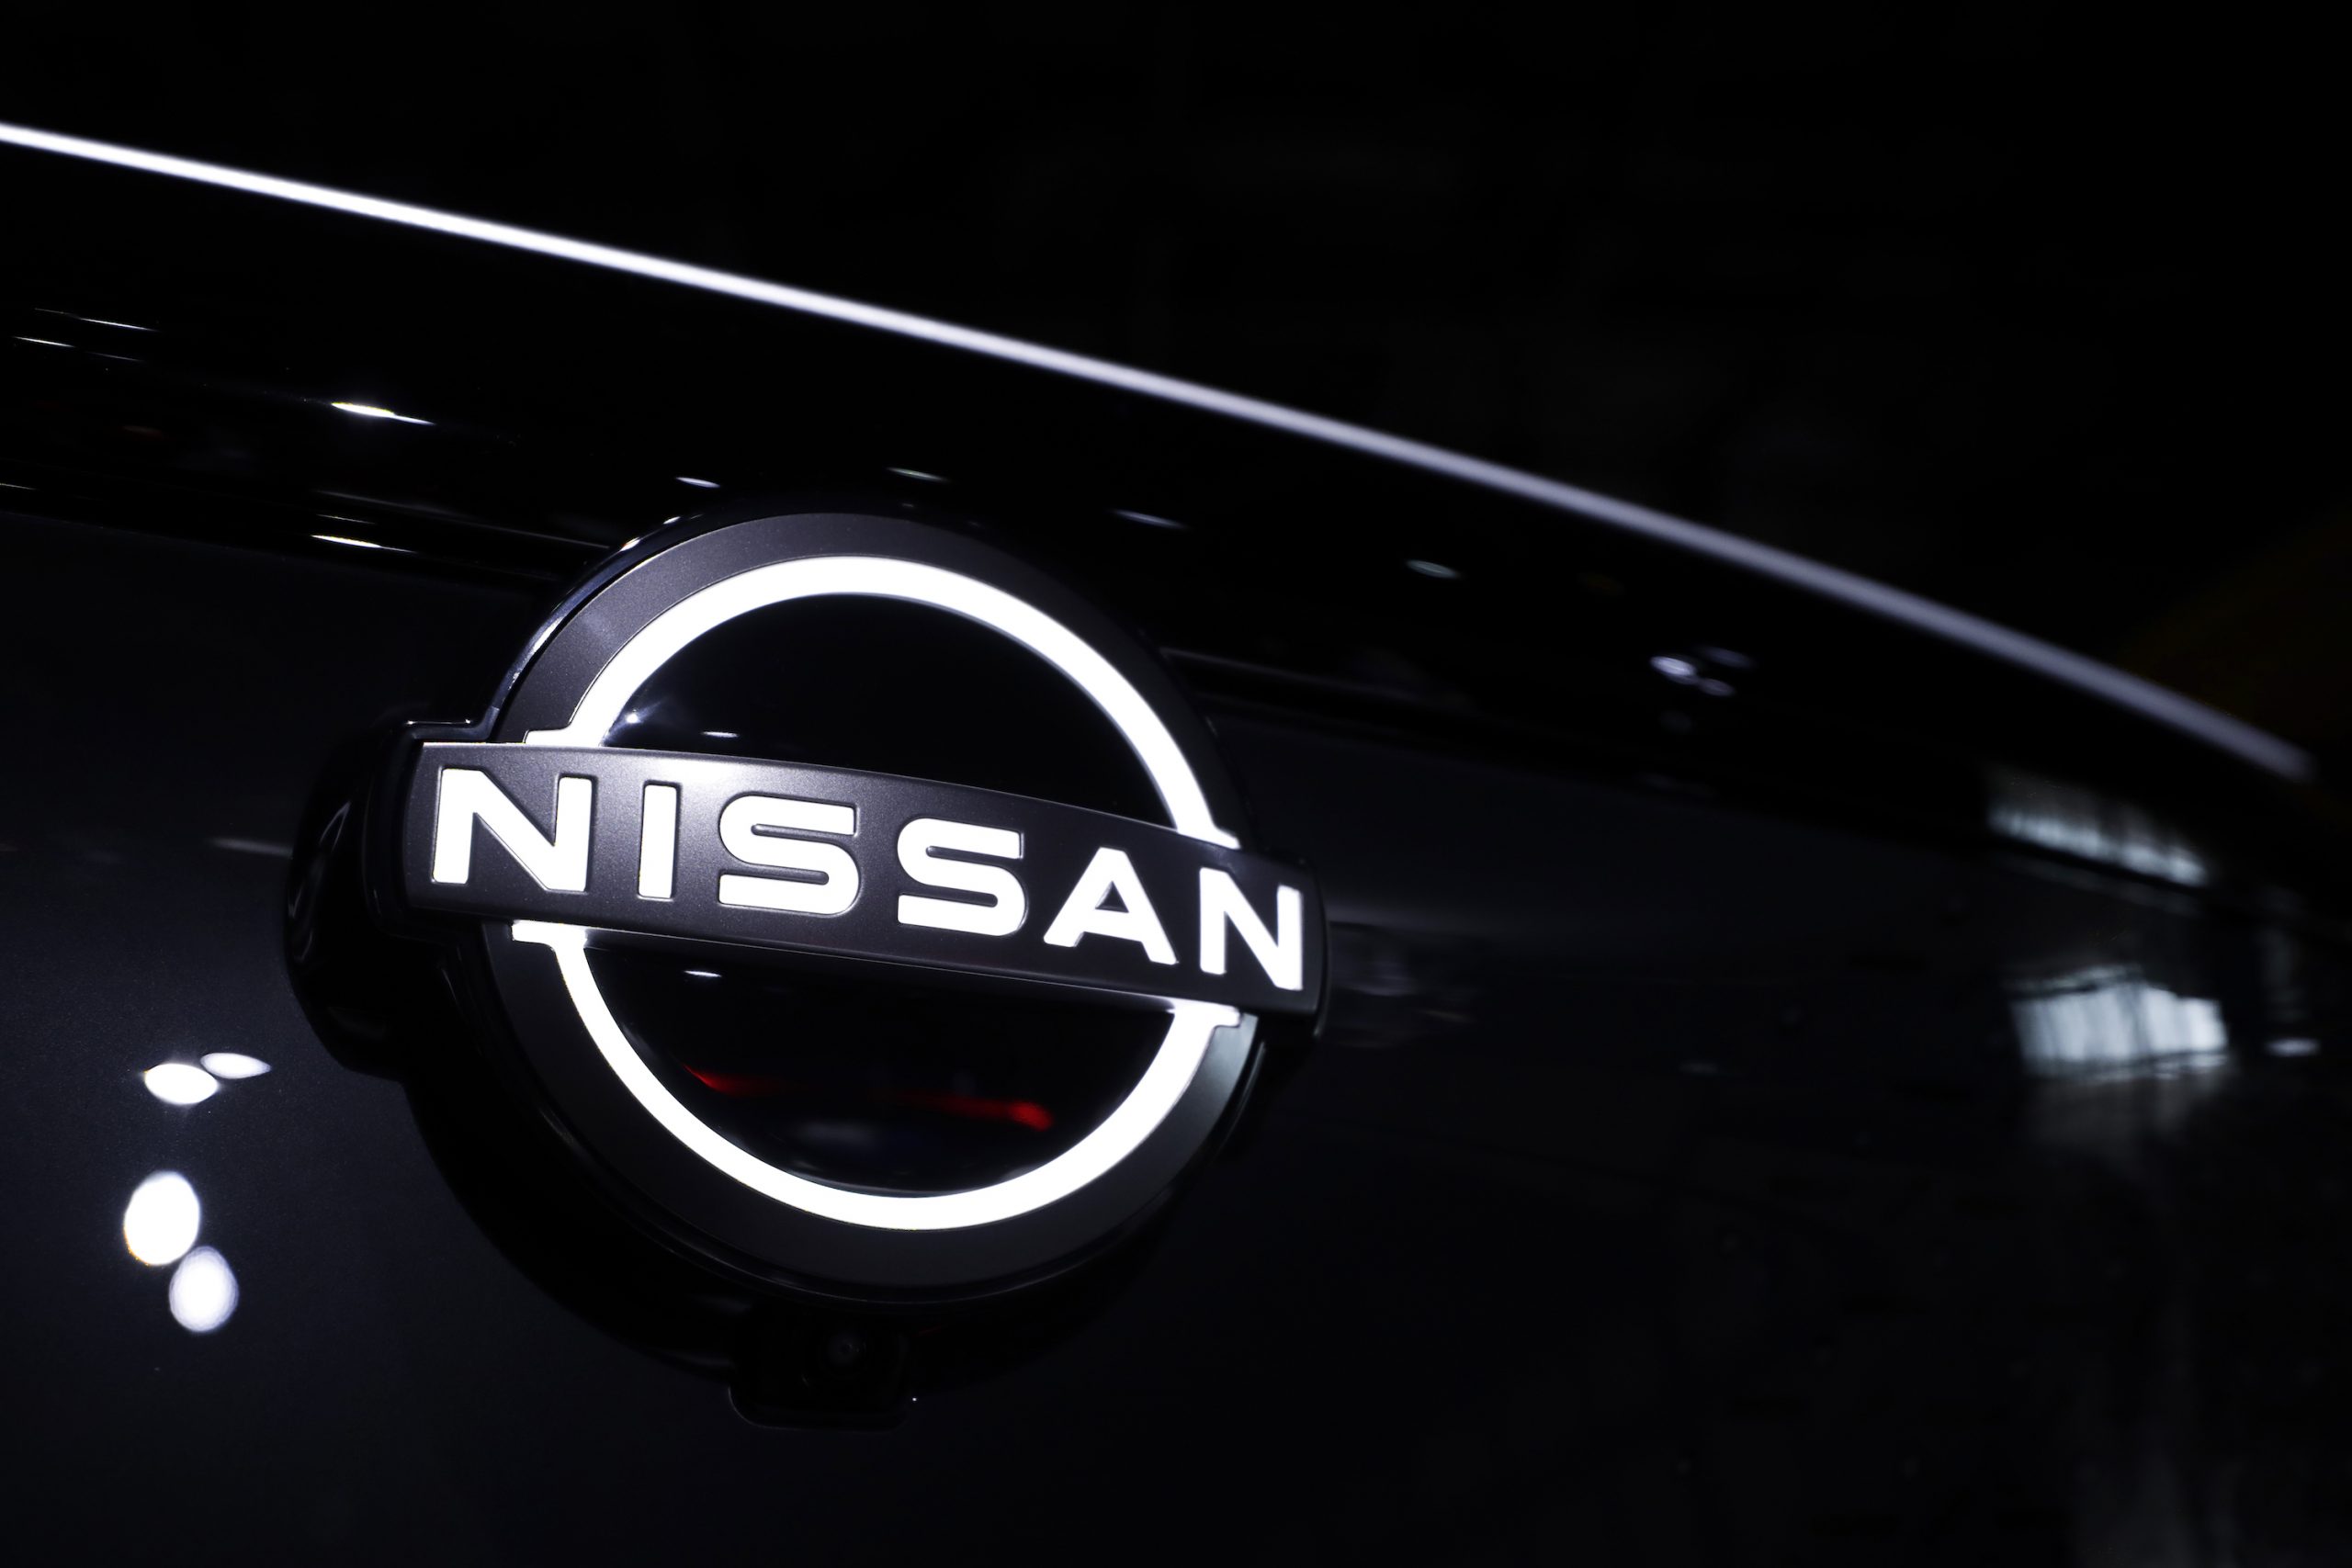 A backlit NIssan logo on a black grille